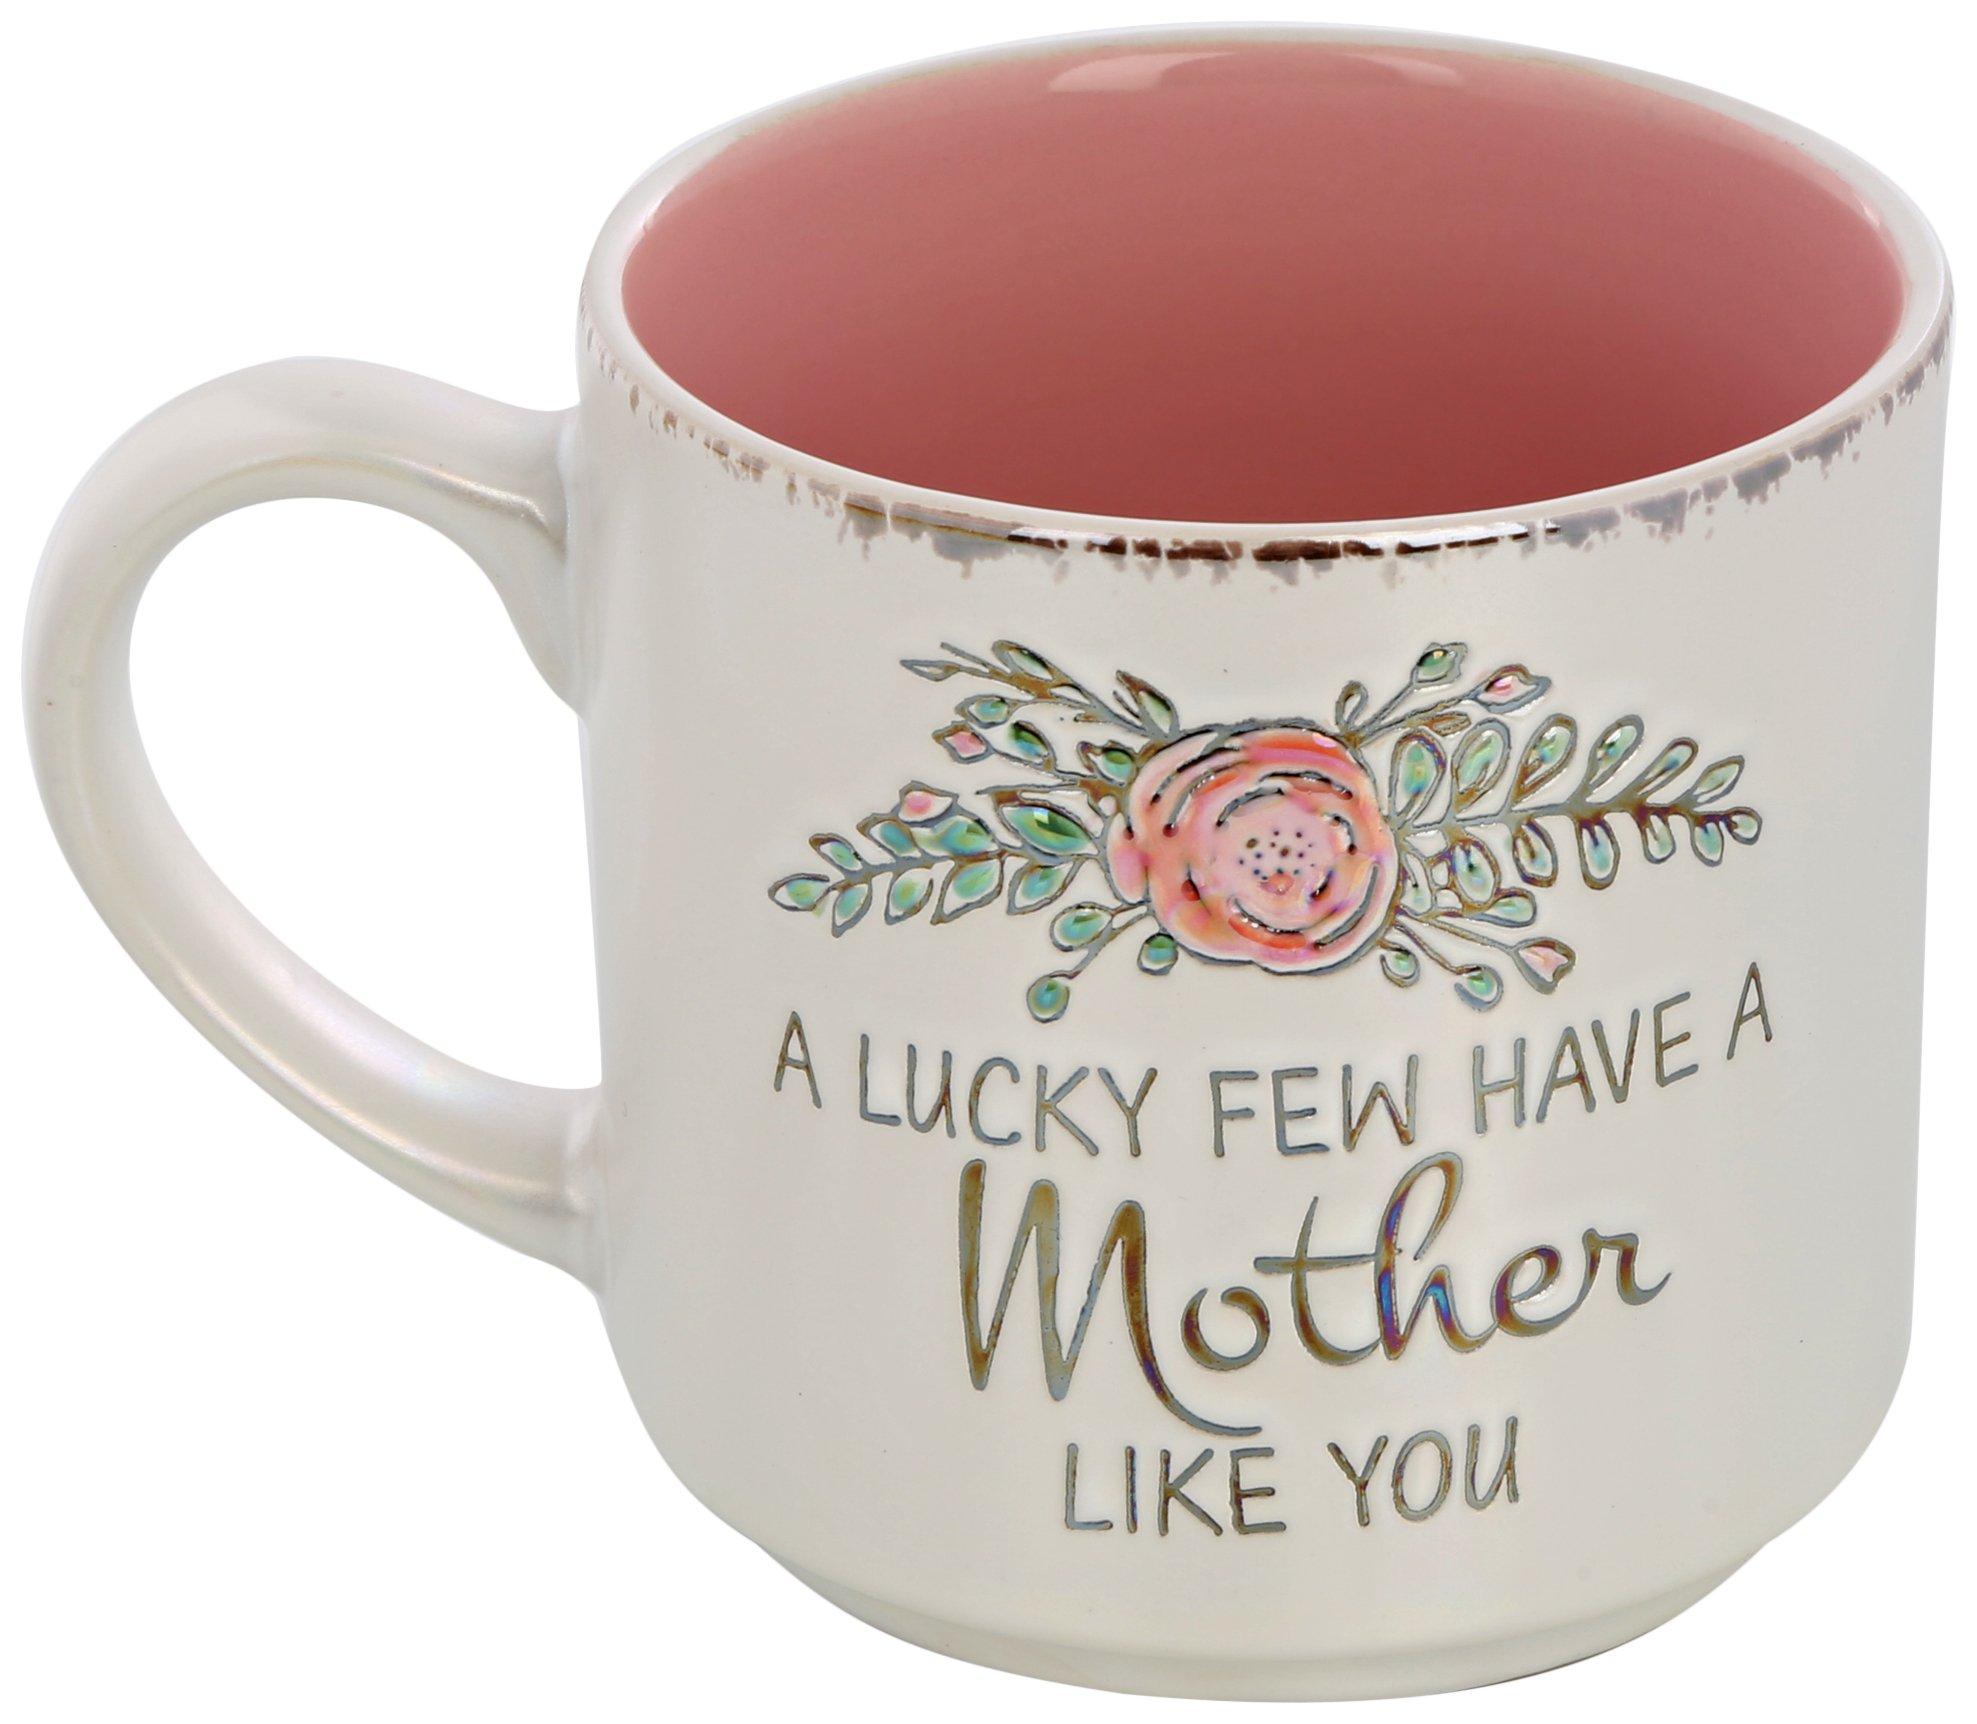 18oz Mother Like You Ceramic Mug